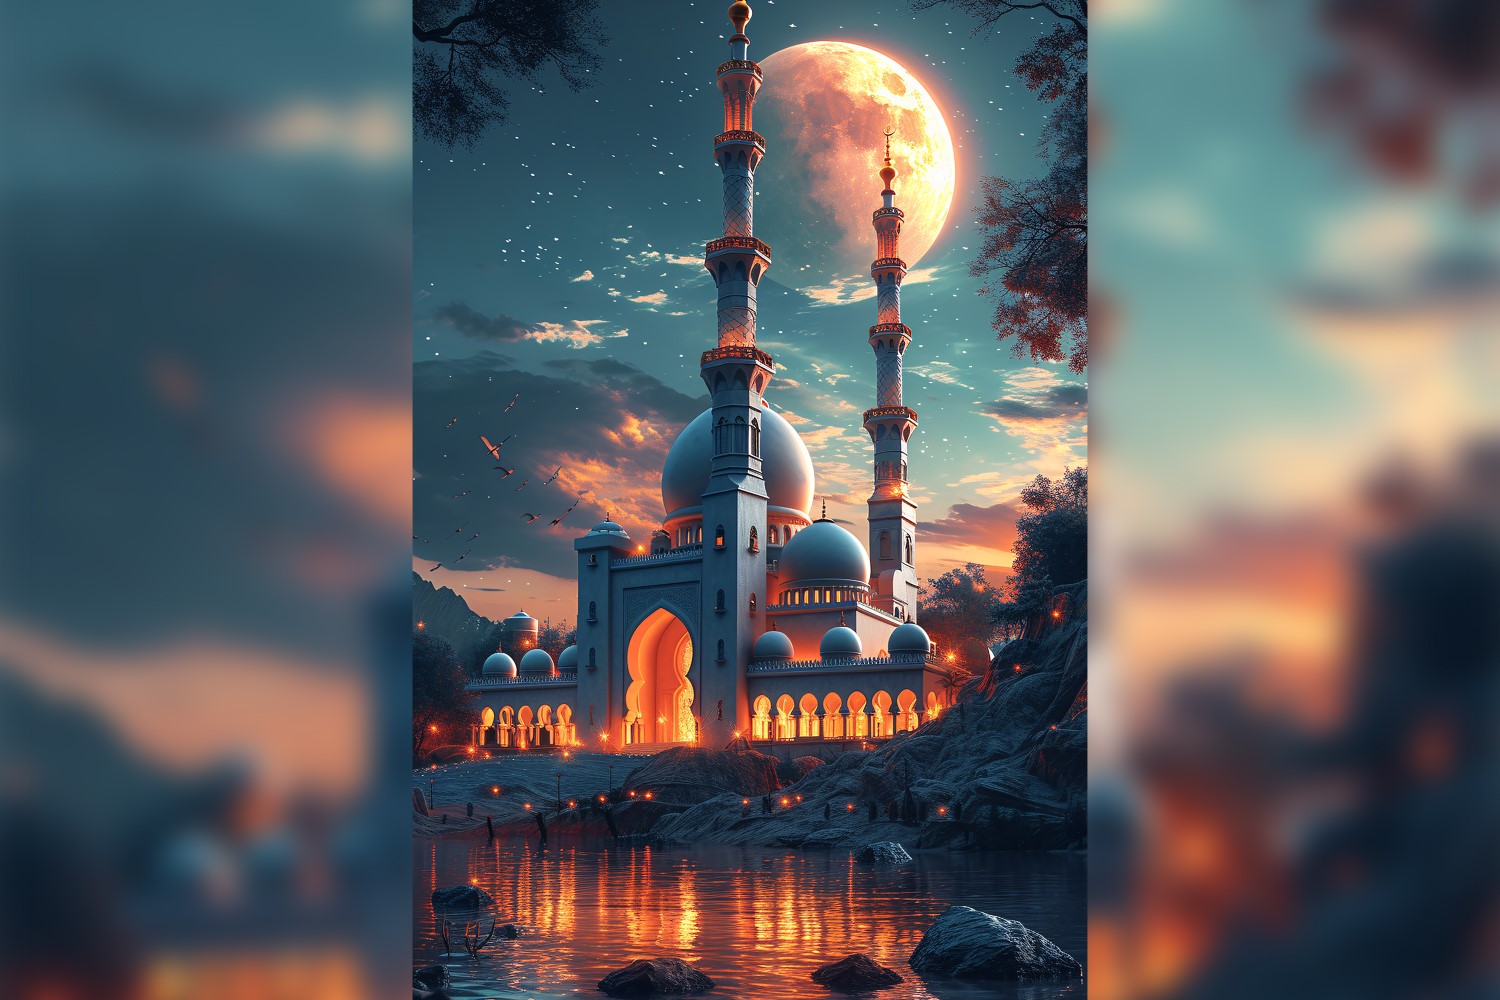 Ramadan Kareem greeting card poster design with mosque & moon 01